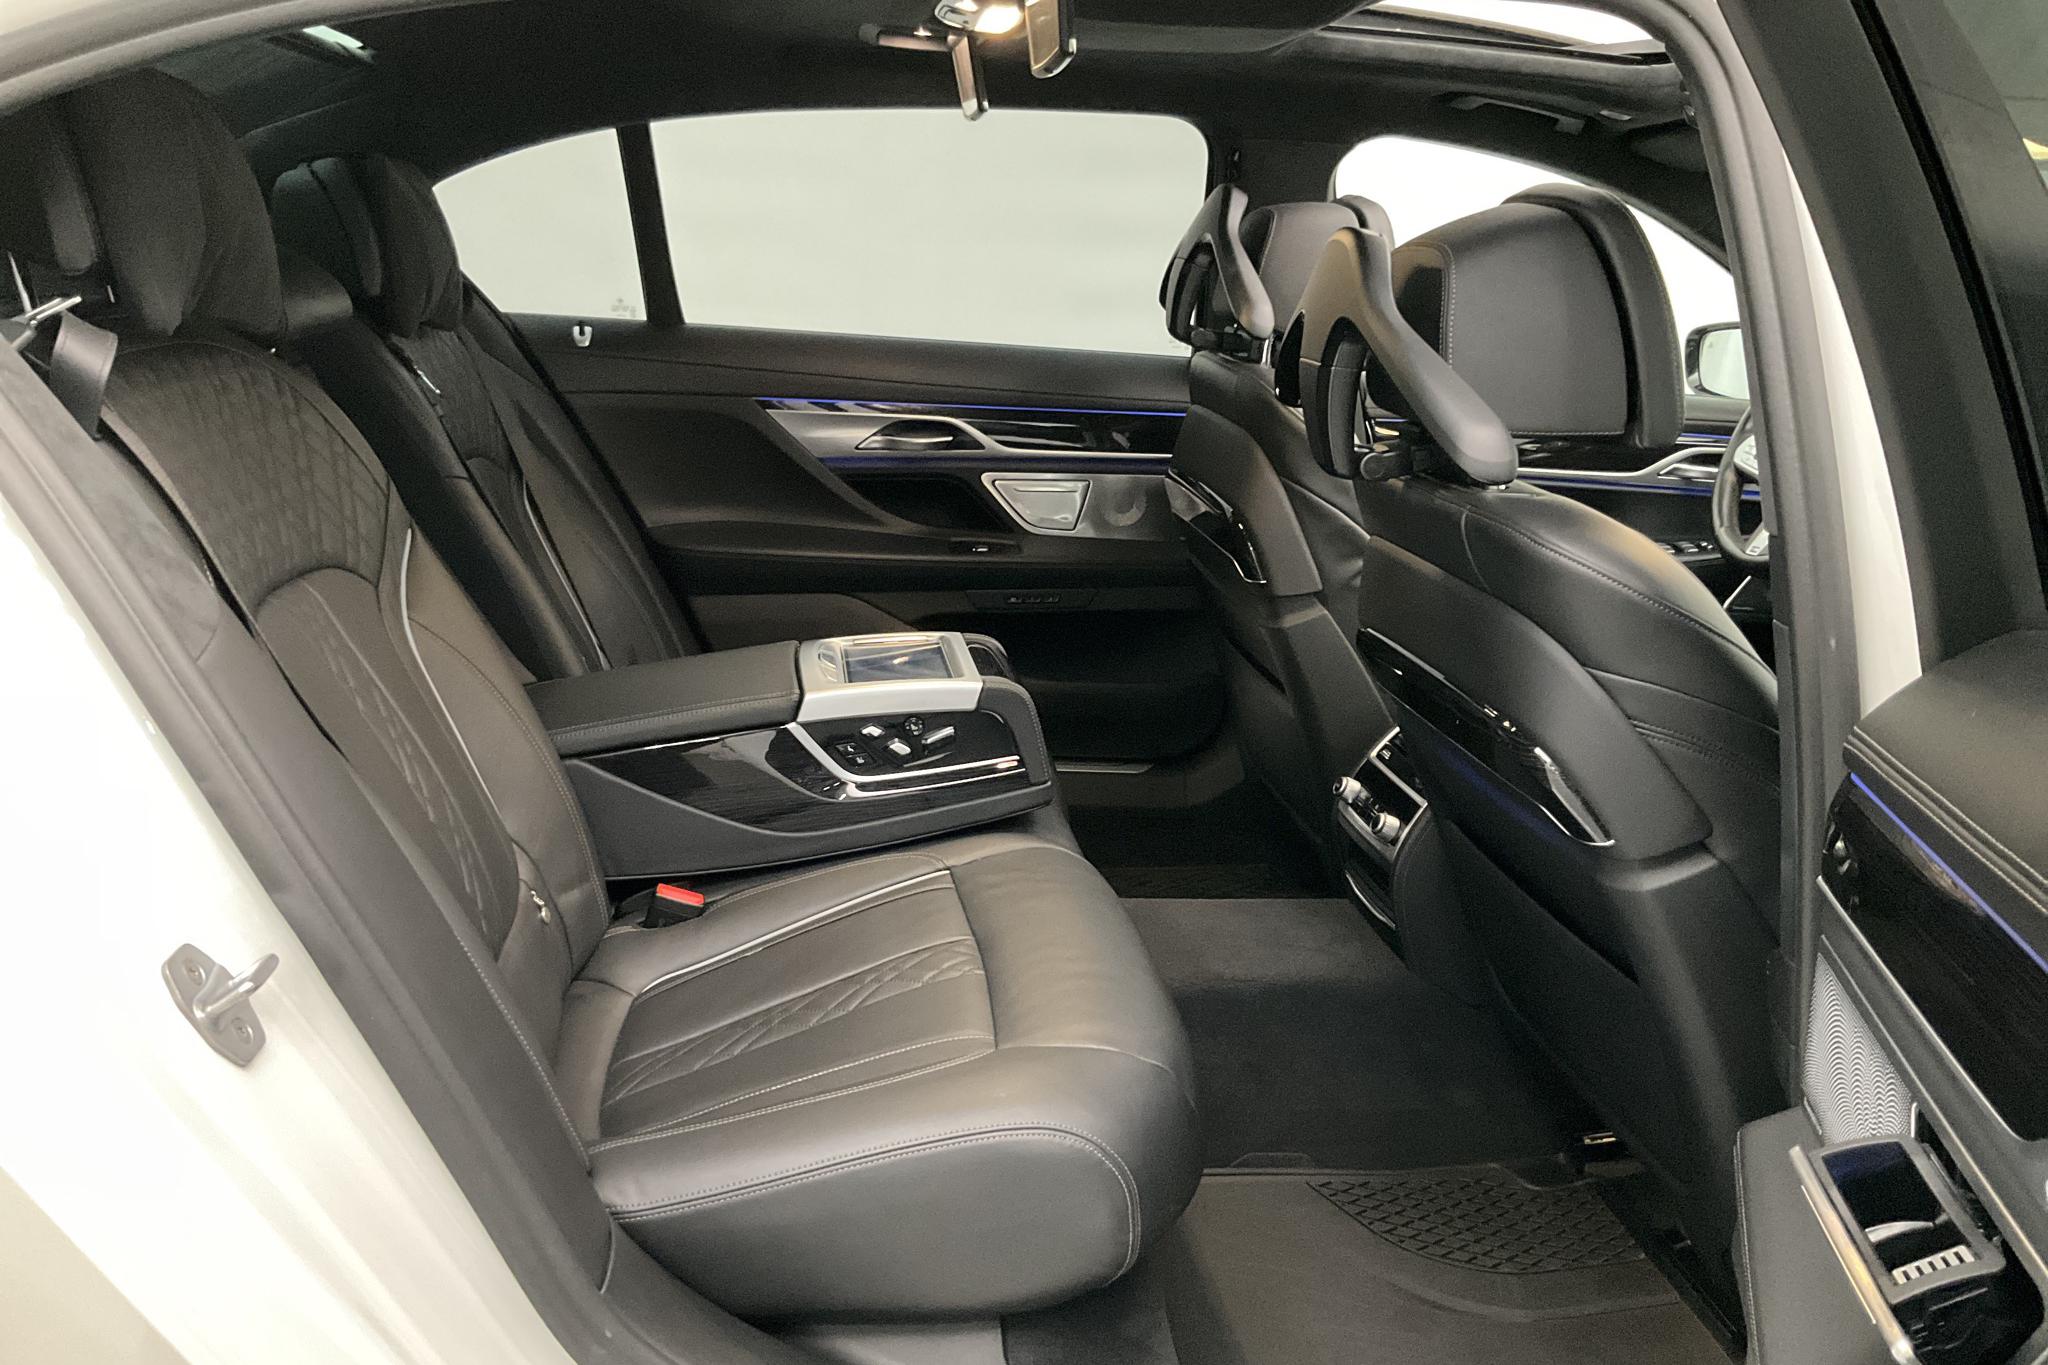 BMW 750i xDrive Sedan, G11 (450hk) - 68 480 km - Automatic - white - 2018